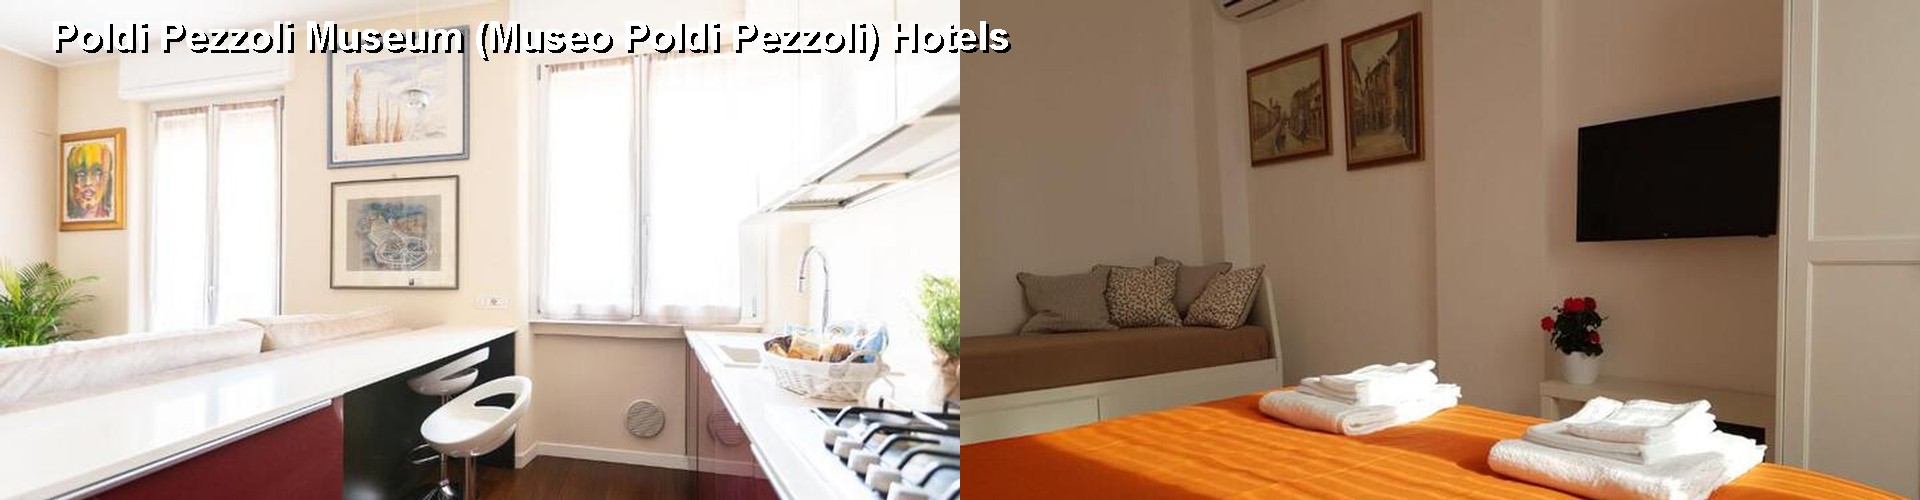 5 Best Hotels near Poldi Pezzoli Museum (Museo Poldi Pezzoli)